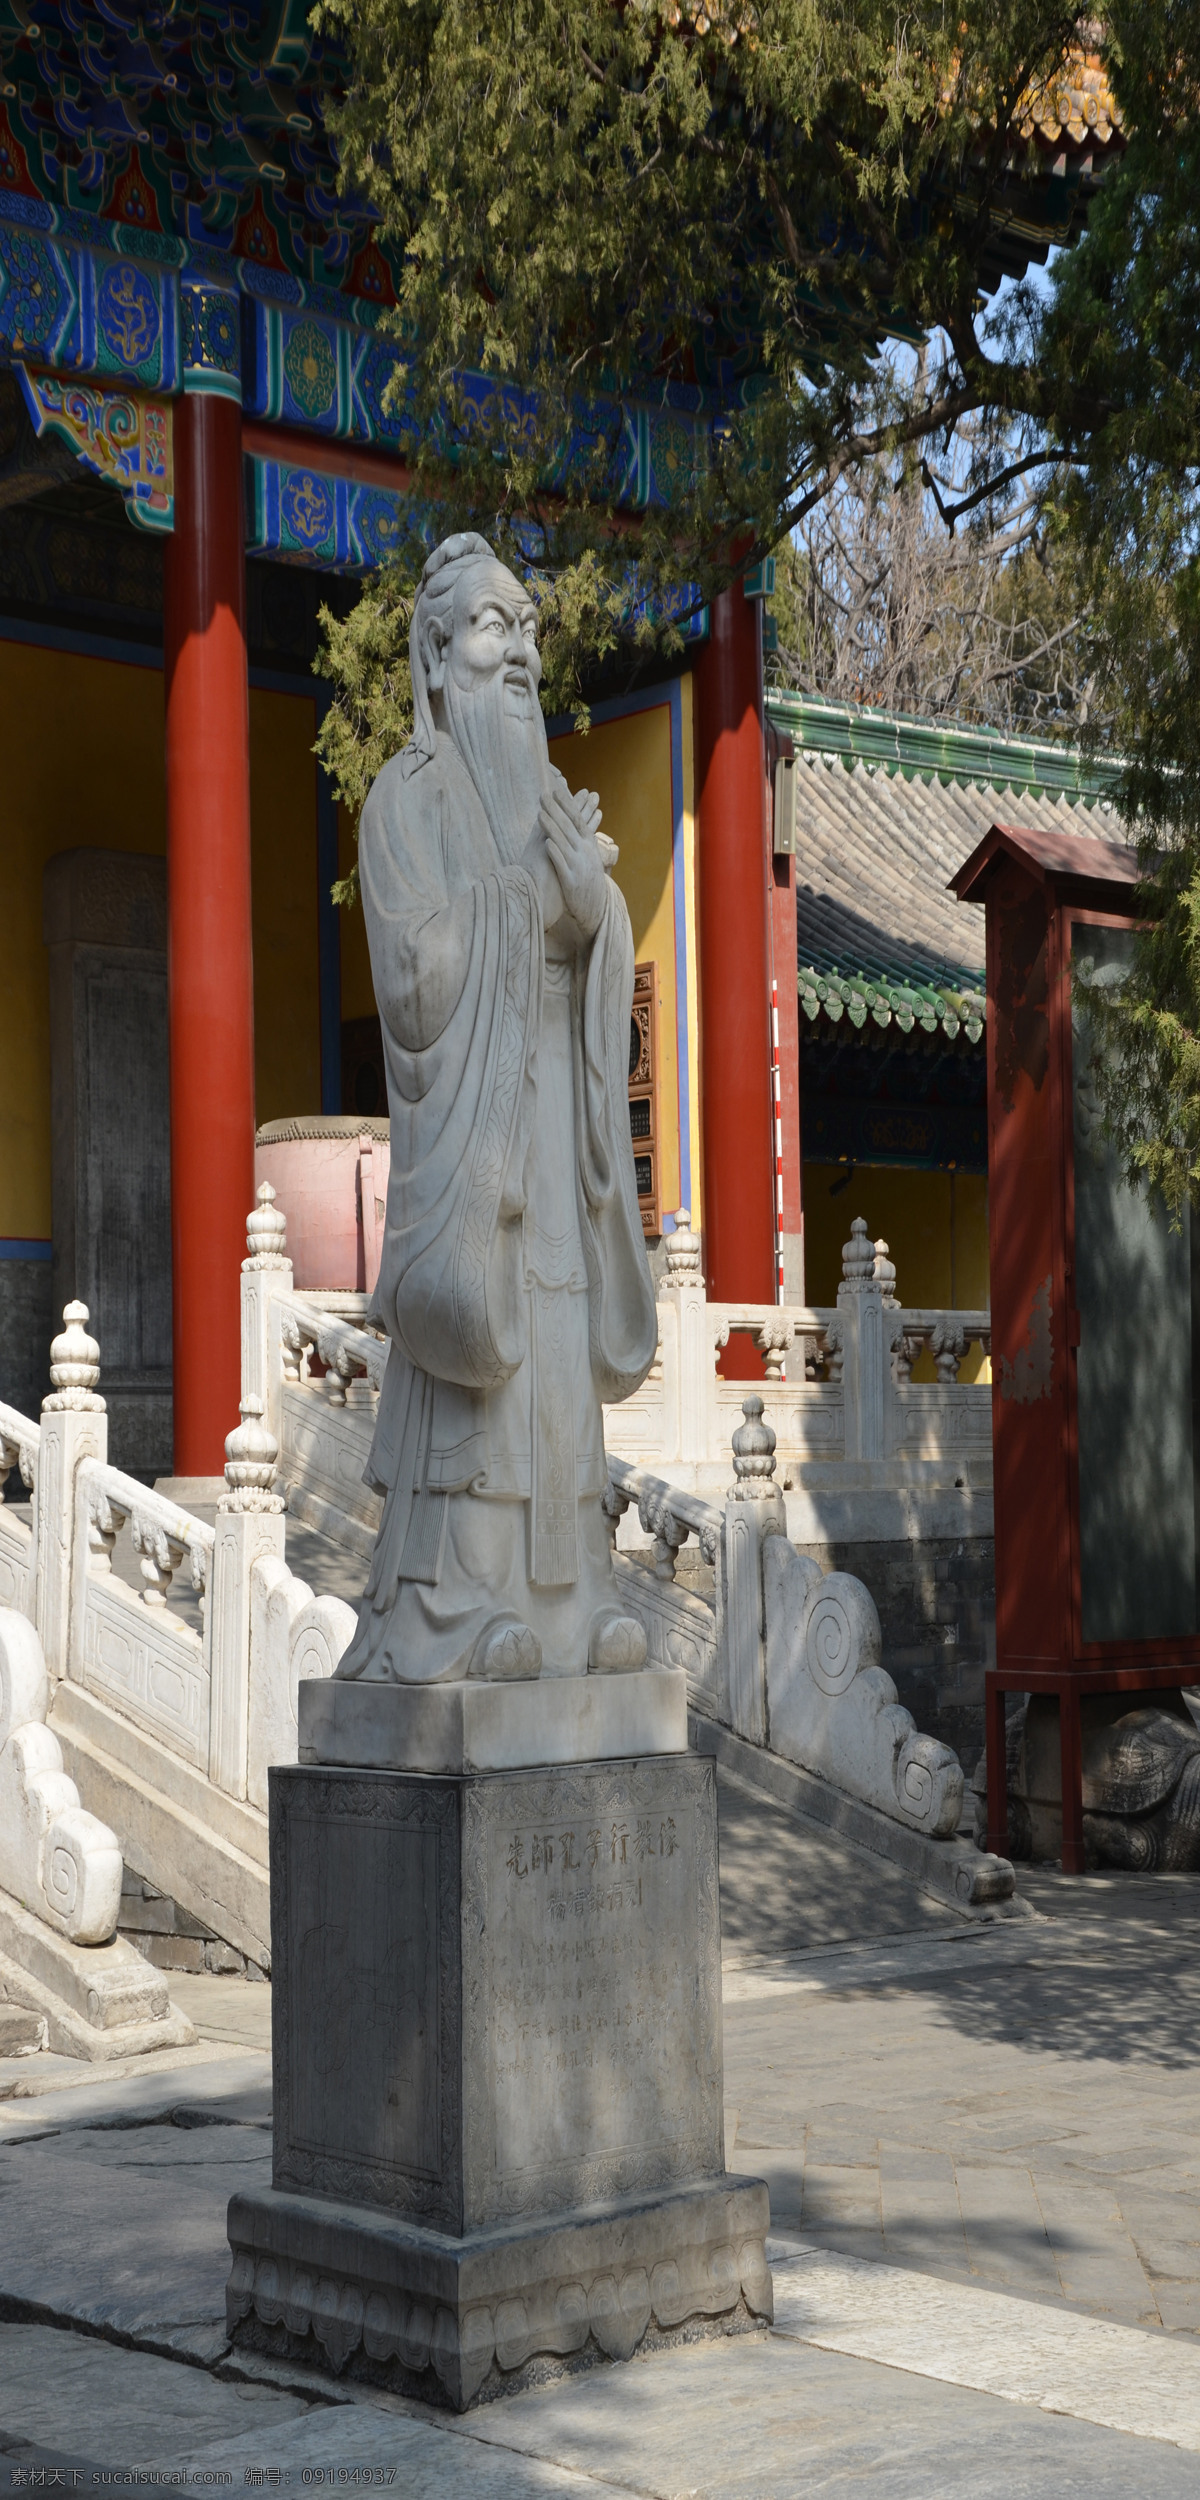 孔子像 国子监 孔庙 北京 孔子 旅游摄影 国内旅游